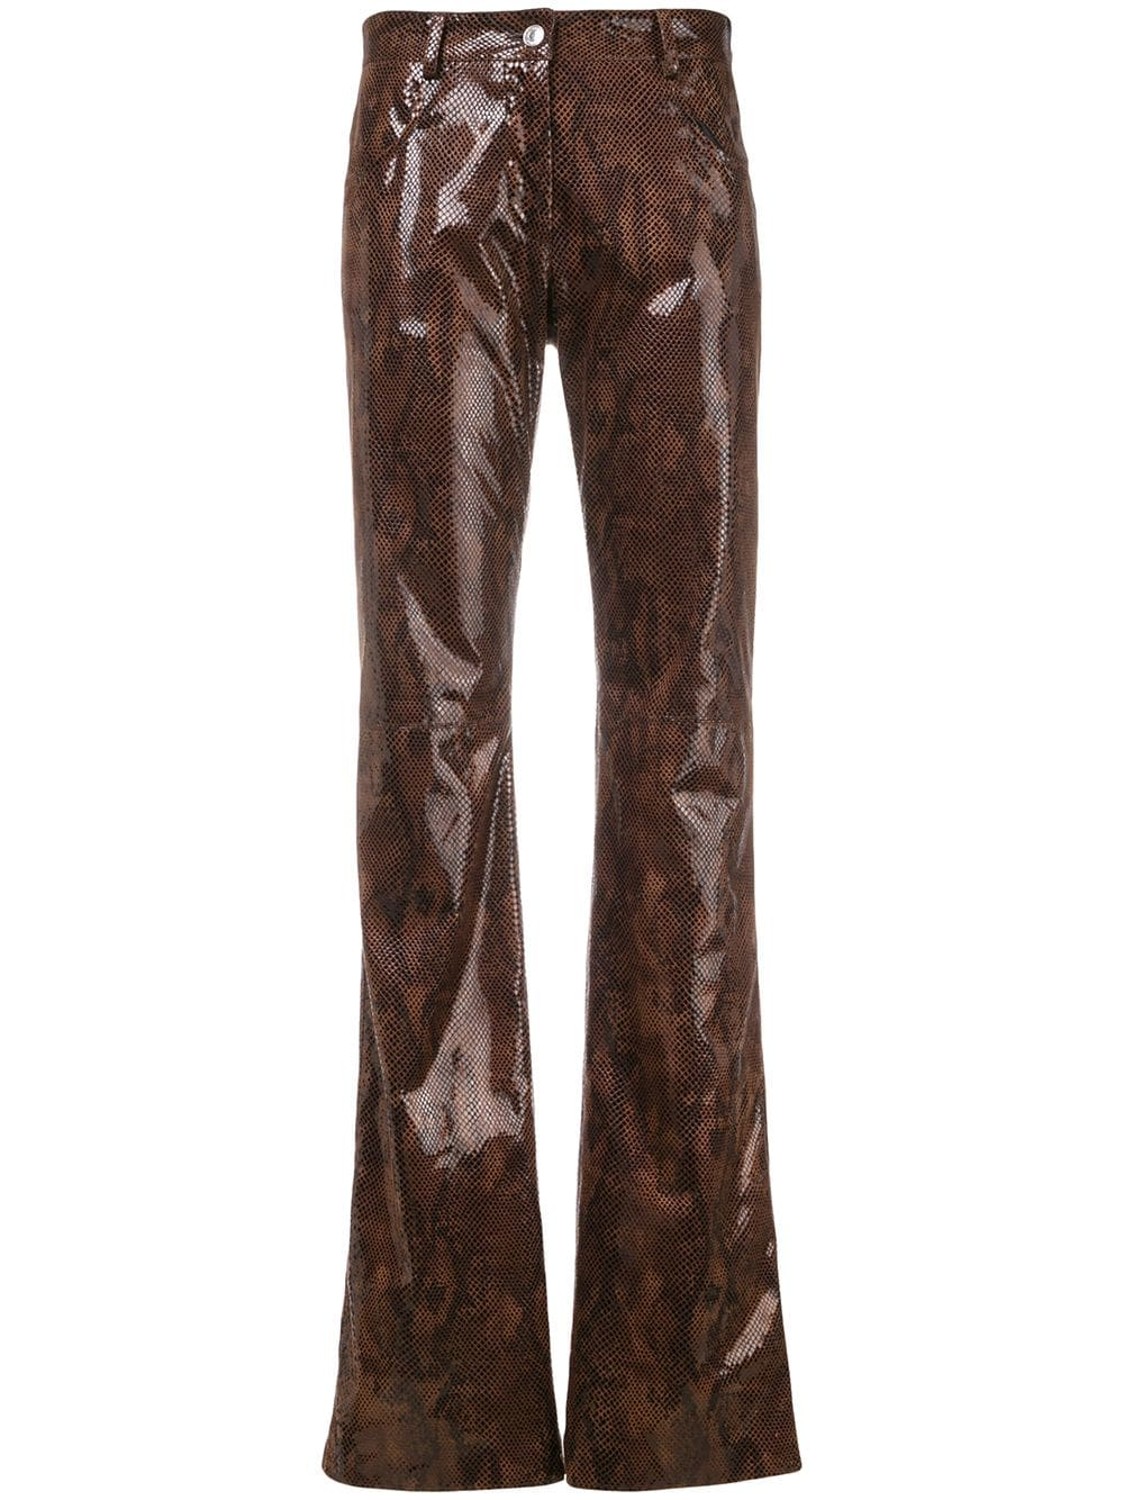 shop MSGM Sales Pantaloni: Pantalone MSGM, vita regolare, zampa d'elefante, quattro tasche, tessuto stampato serpente.

Composizione: 100% poliestere. number 1334